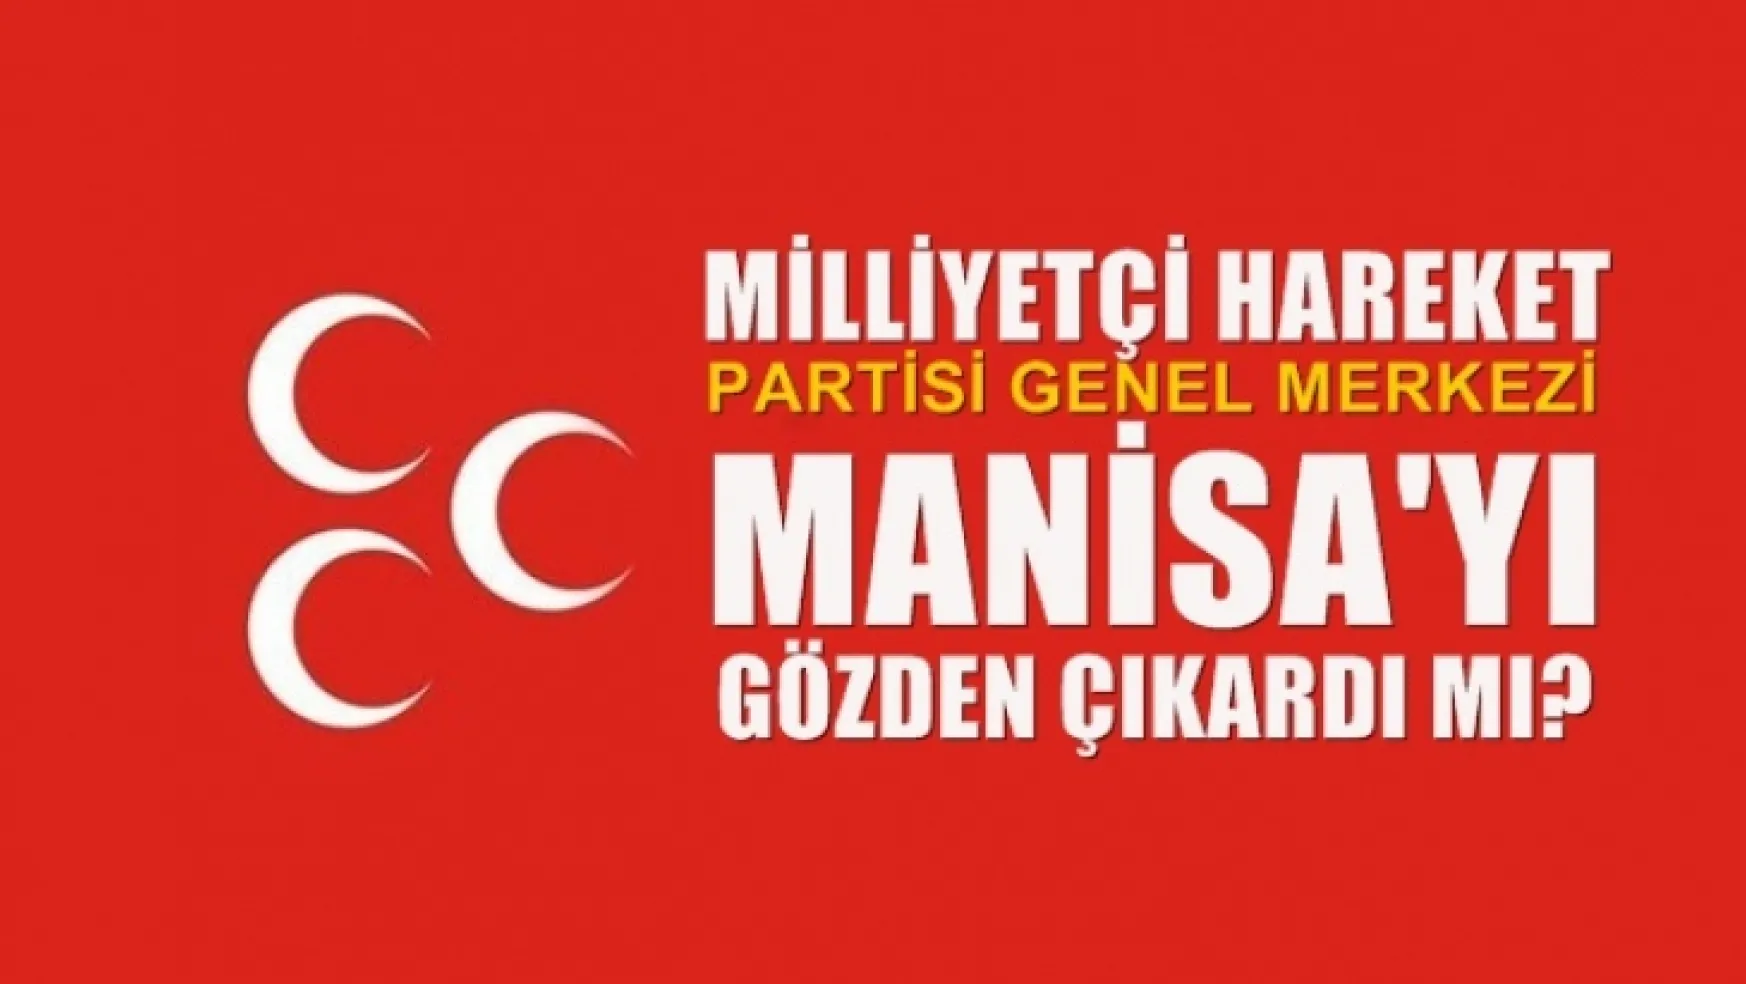 MHP Genel Merkezi Manisa'yı gözden çıkardı mı?